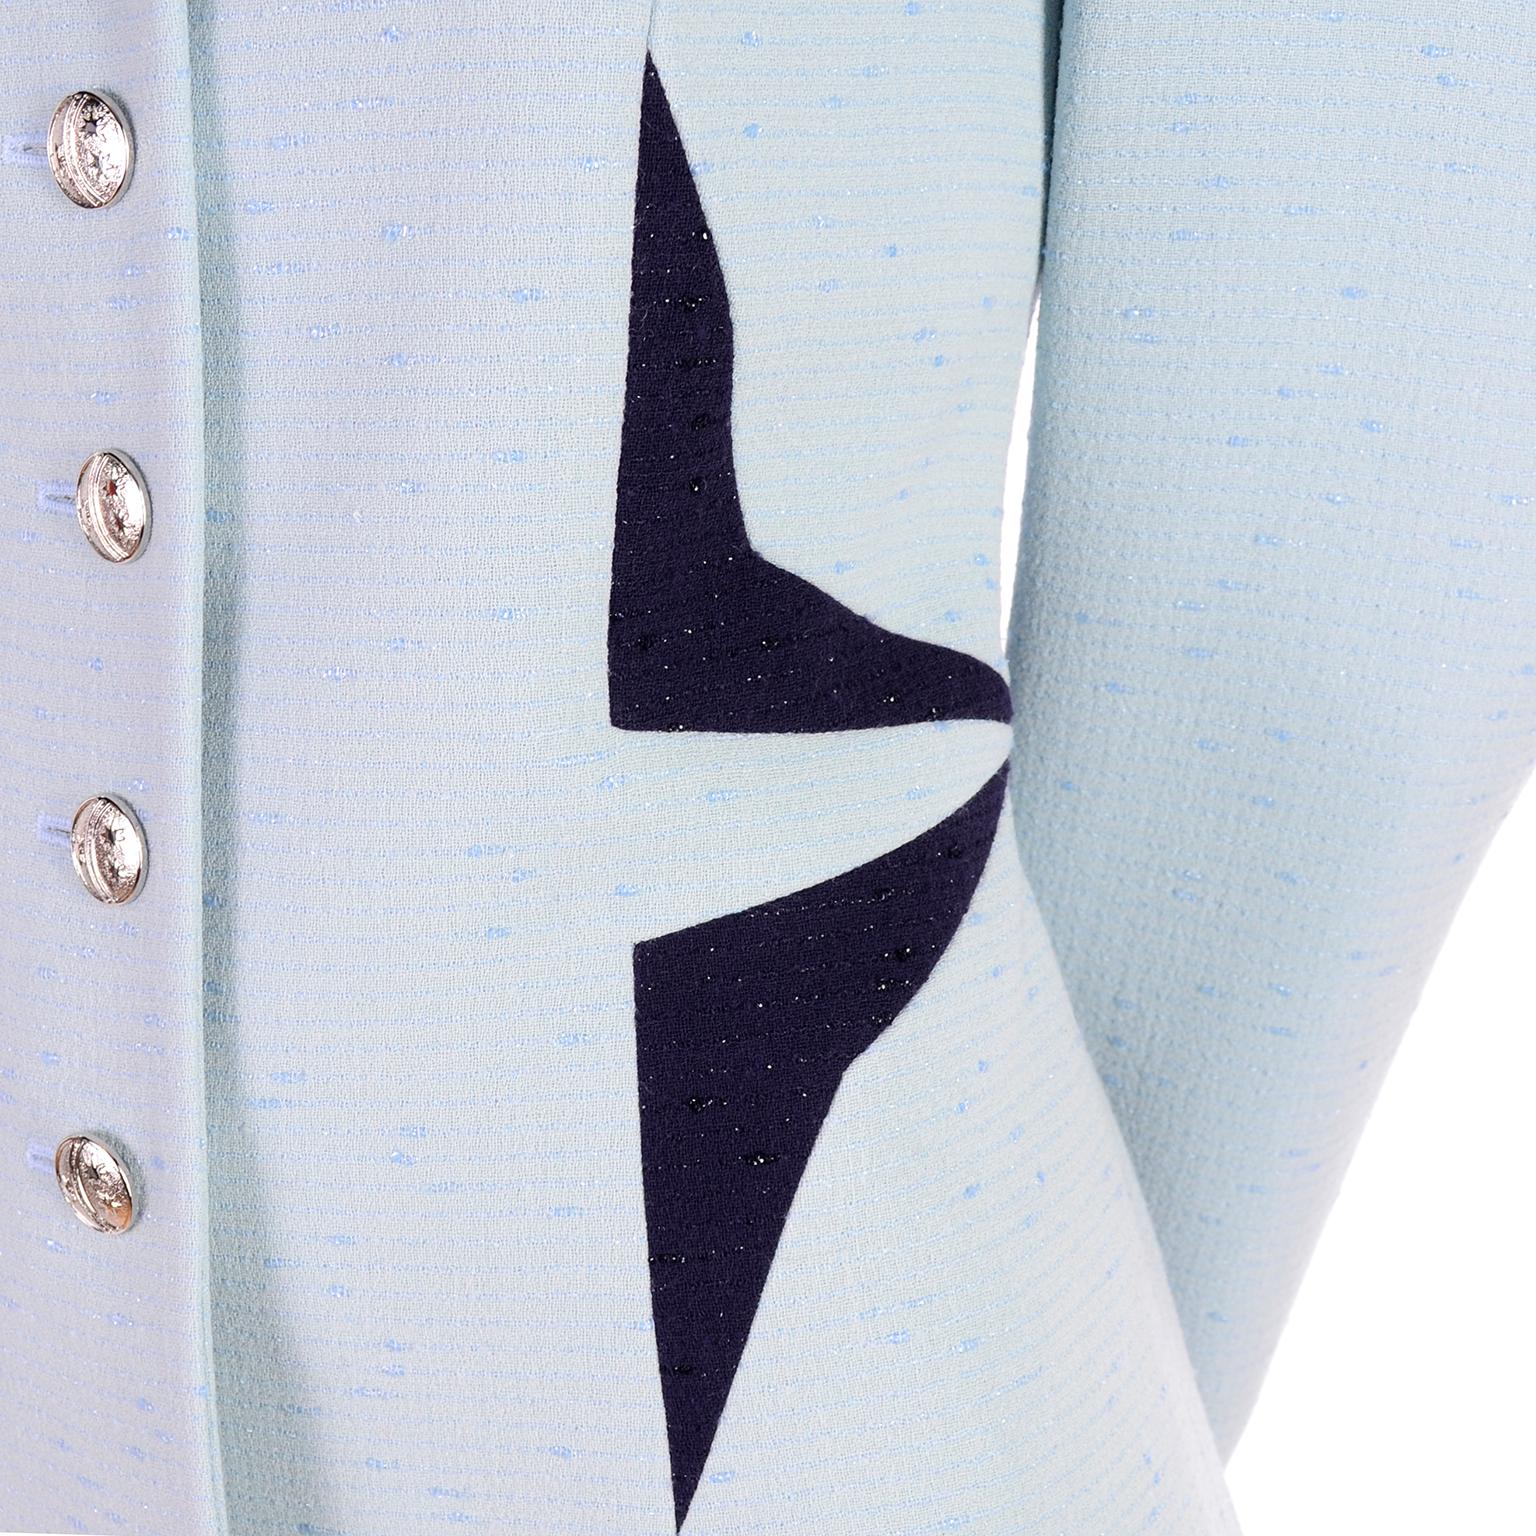 Dies ist ein seltener Vintage-Blazer von Escada mit geometrischen Mustern, die an den Stil von Thierry Mugler erinnern! Diese hellblaue Jacke hat dramatische dunkelblaue Dreiecke an der Taille und unter dem Kragen. Die Jacke ist aus einem blauen